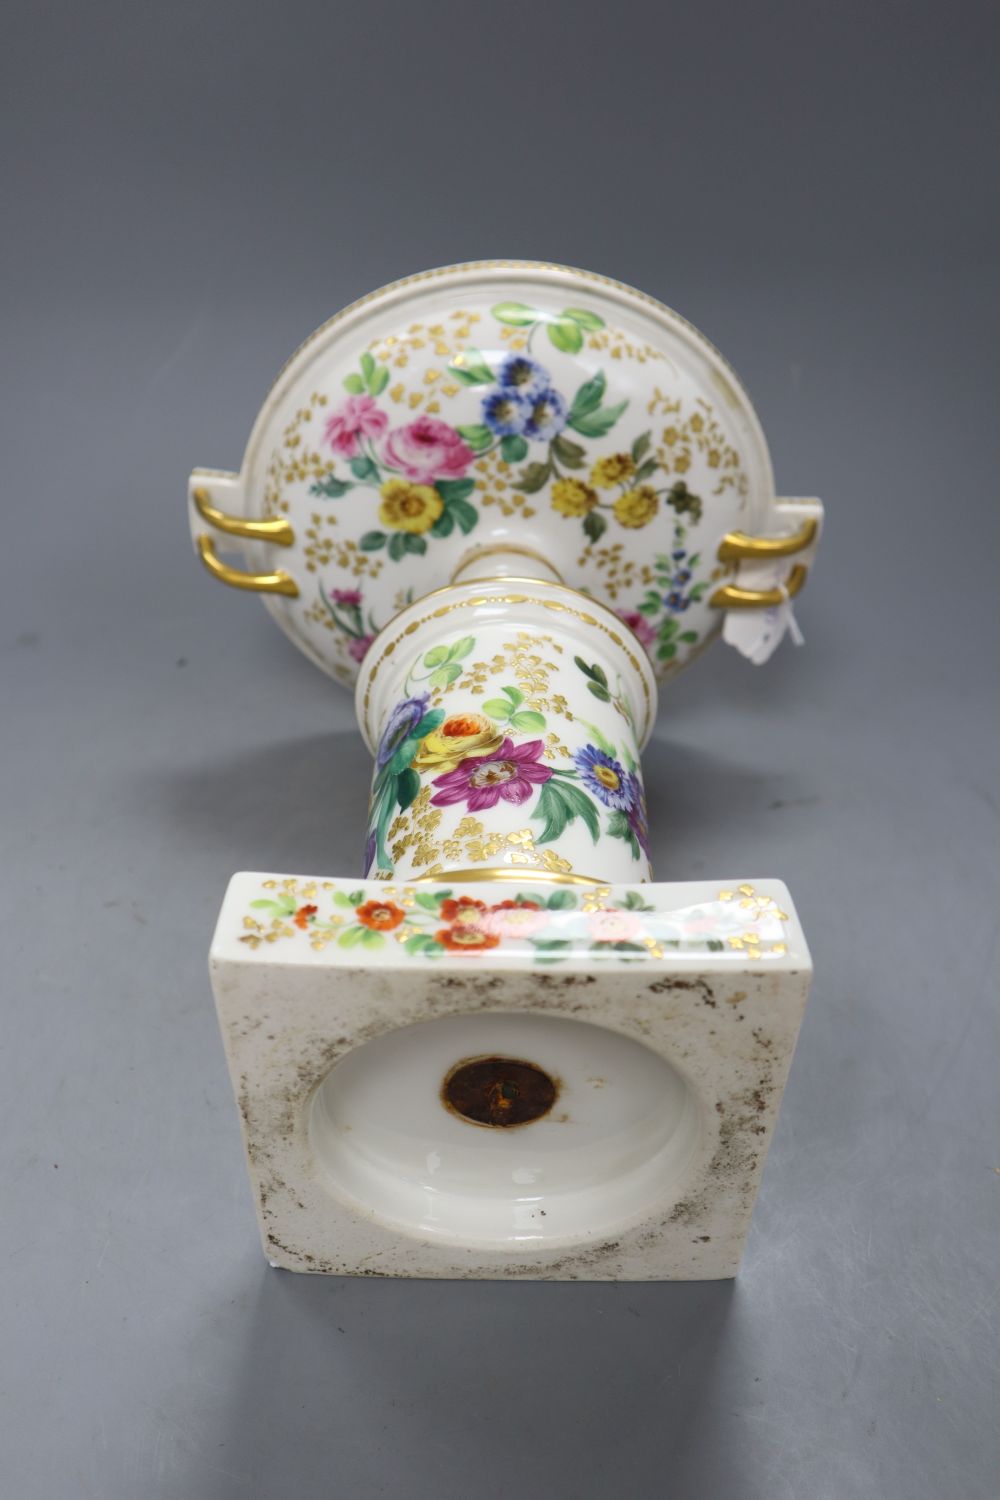 A 19th century Paris porcelain centrepiece bowl, height 27.5cm